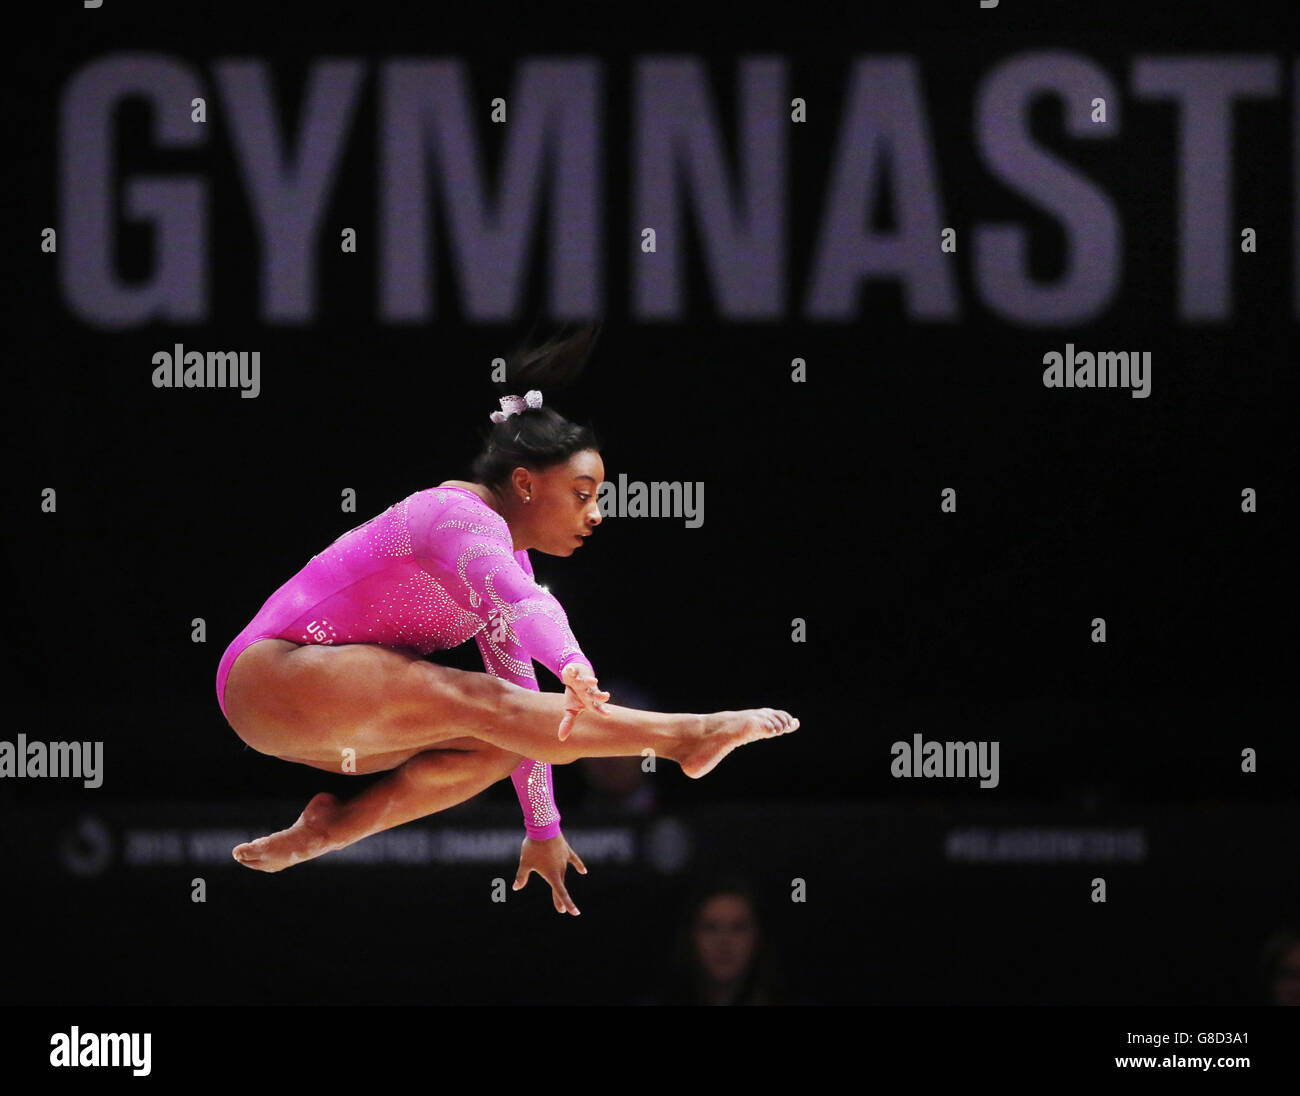 Gymnastik - Weltmeisterschaften 2015 - Tag zwei - das SSE Hydro. Die US-Amerikanerin Simone Biles tritt am zweiten Tag der Weltgymnastik-Weltmeisterschaften 2015 beim SSE Hydro in Glasgow am Balance Beam an. Stockfoto